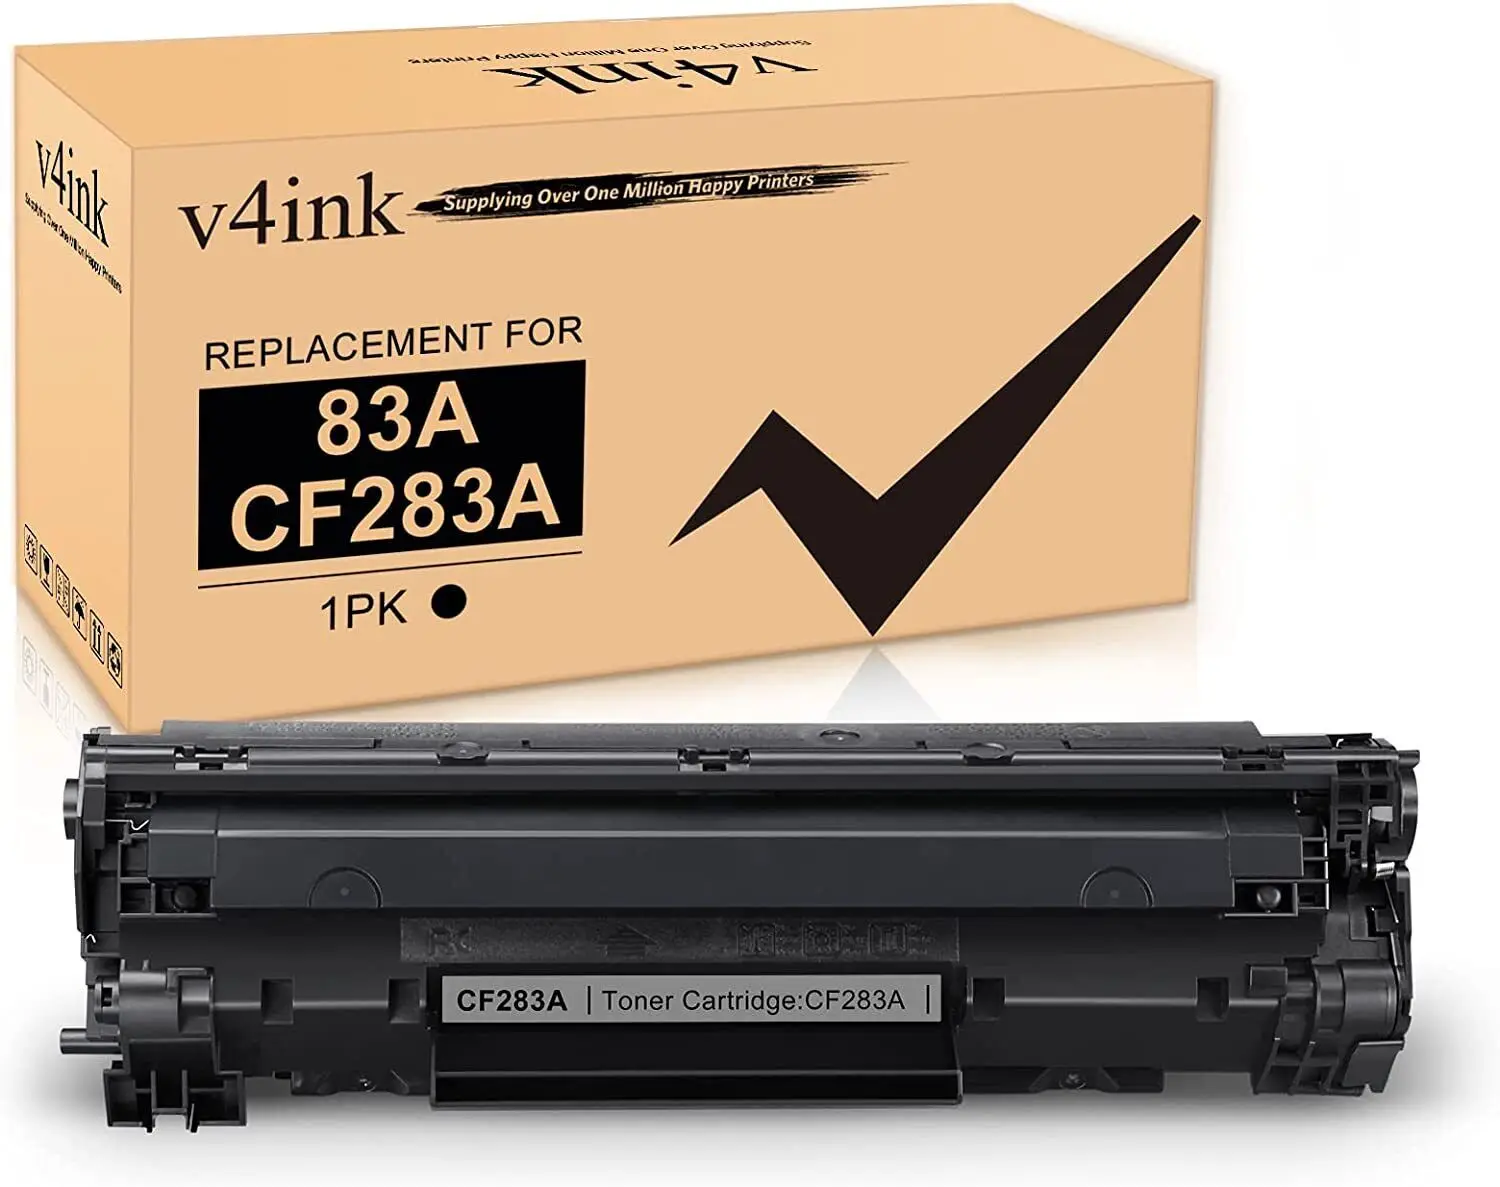 Картридж с тонером V4INK CF283A 83A для HP MFP M127fw M127fn M125nw M201dw, 1 упаковка картридж hp cf283a 83a black картридж